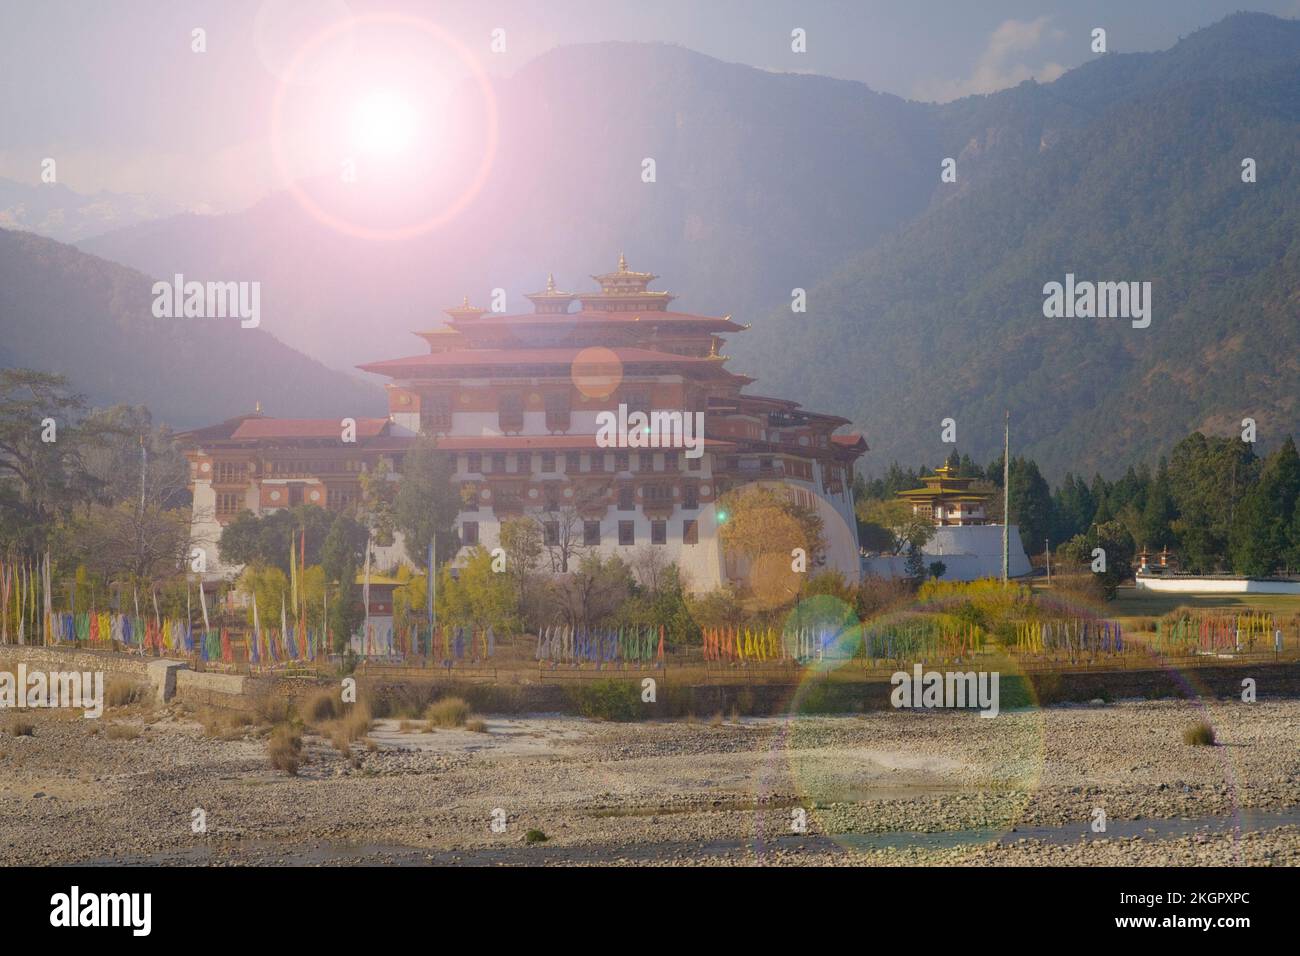 Die alten bhutanischen Tempel befinden sich im wunderschönen Tal inmitten des Himalaya-Berges. Das ist eine wunderbare Touristenattraktion. Die Aussicht ist traumhaft. Stockfoto